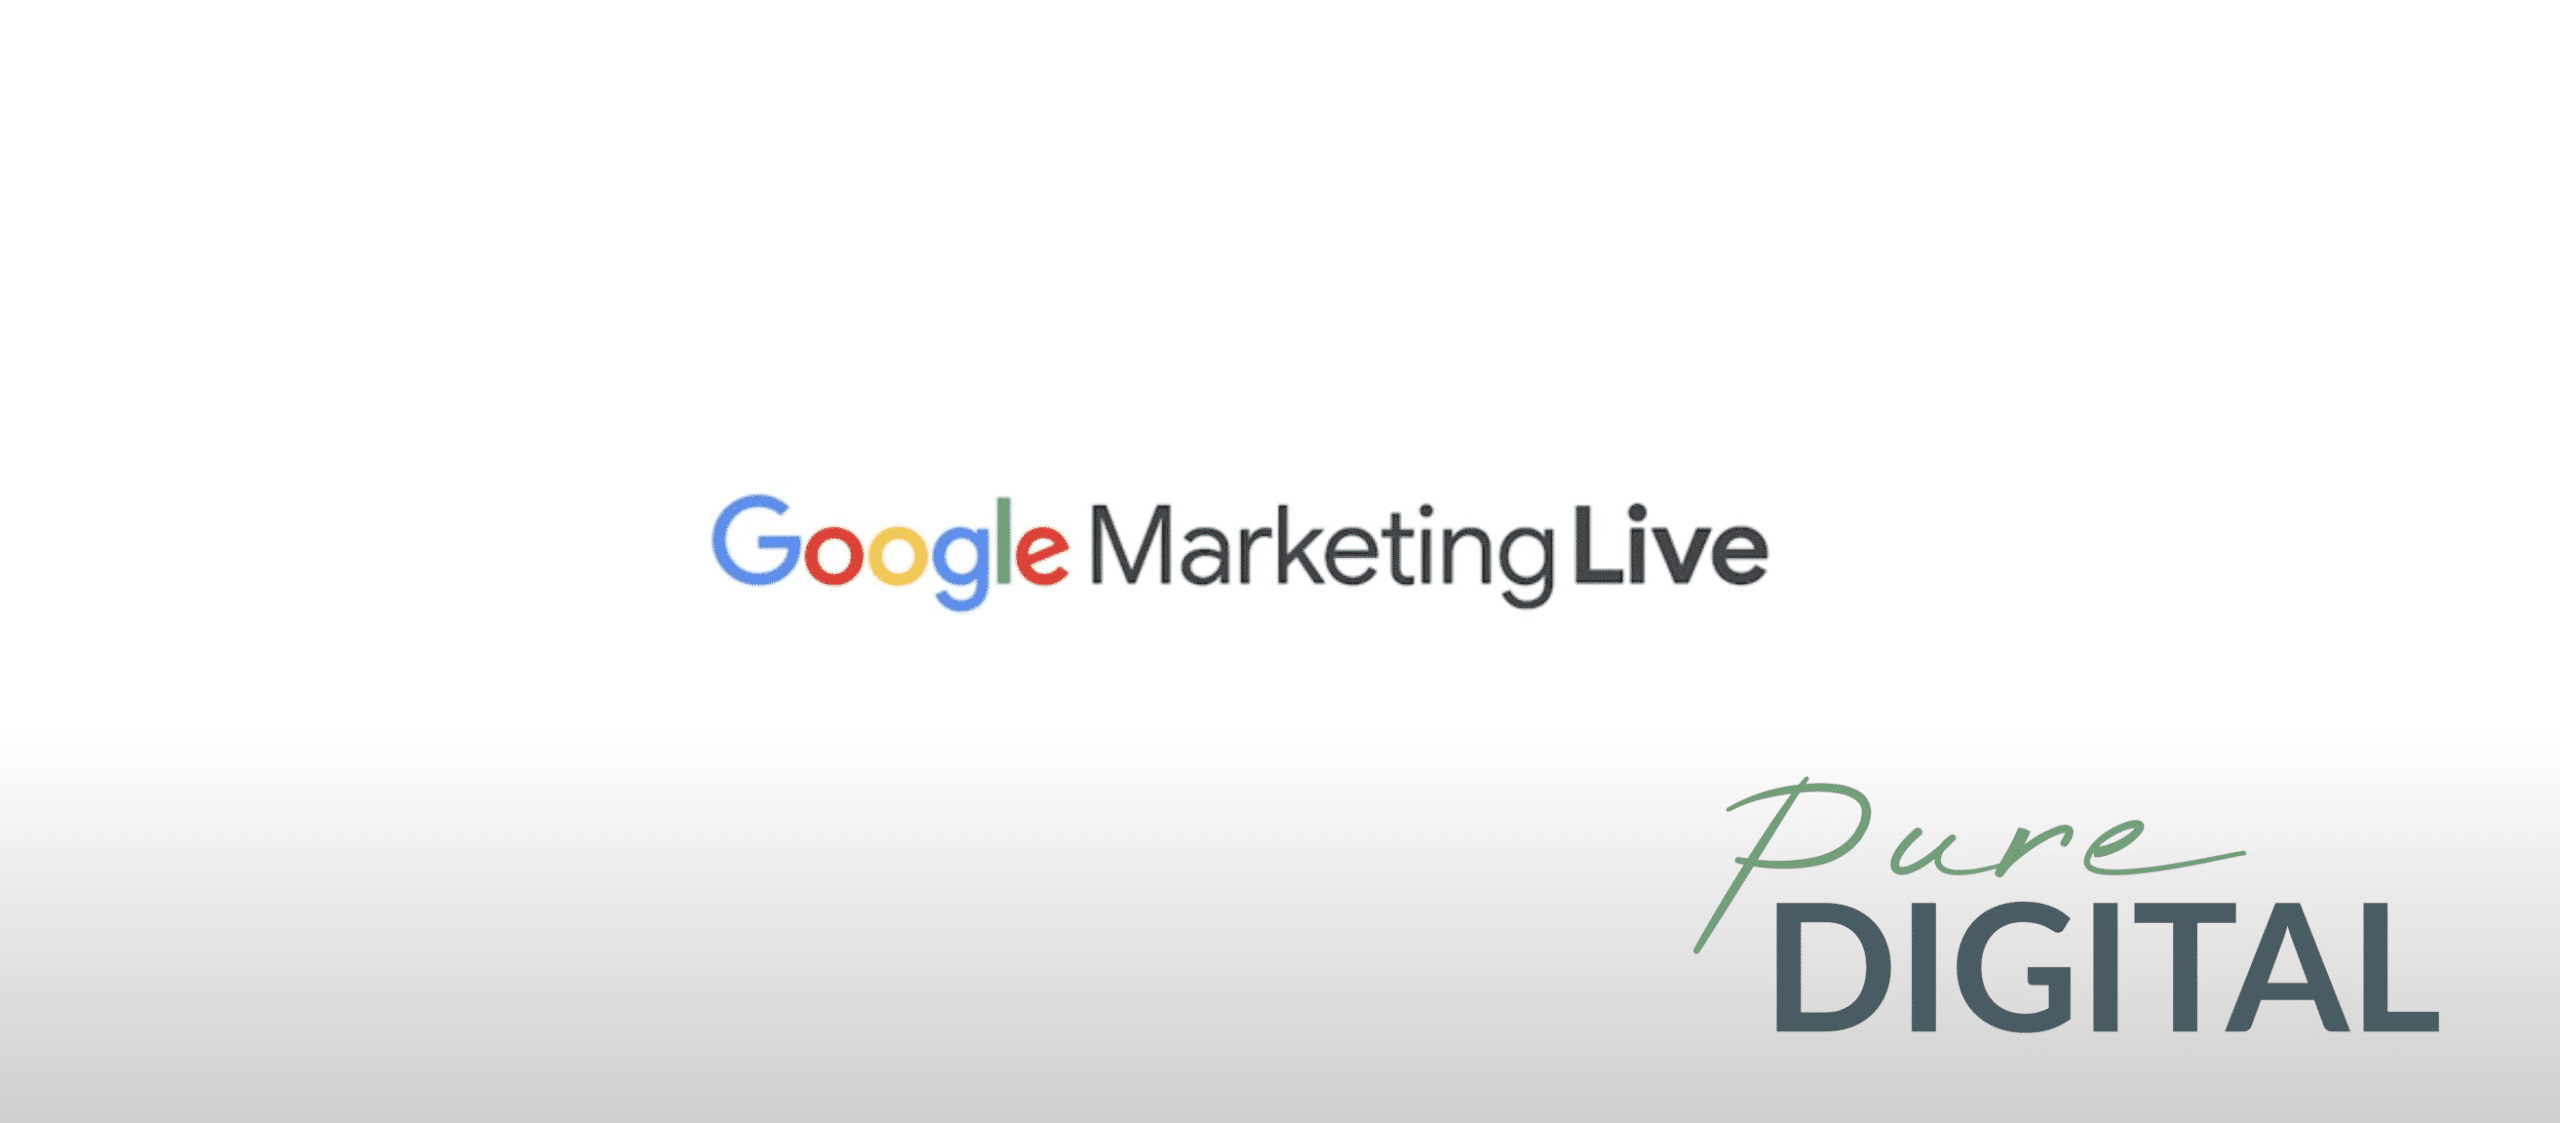 Google Marketing Live PureDigital